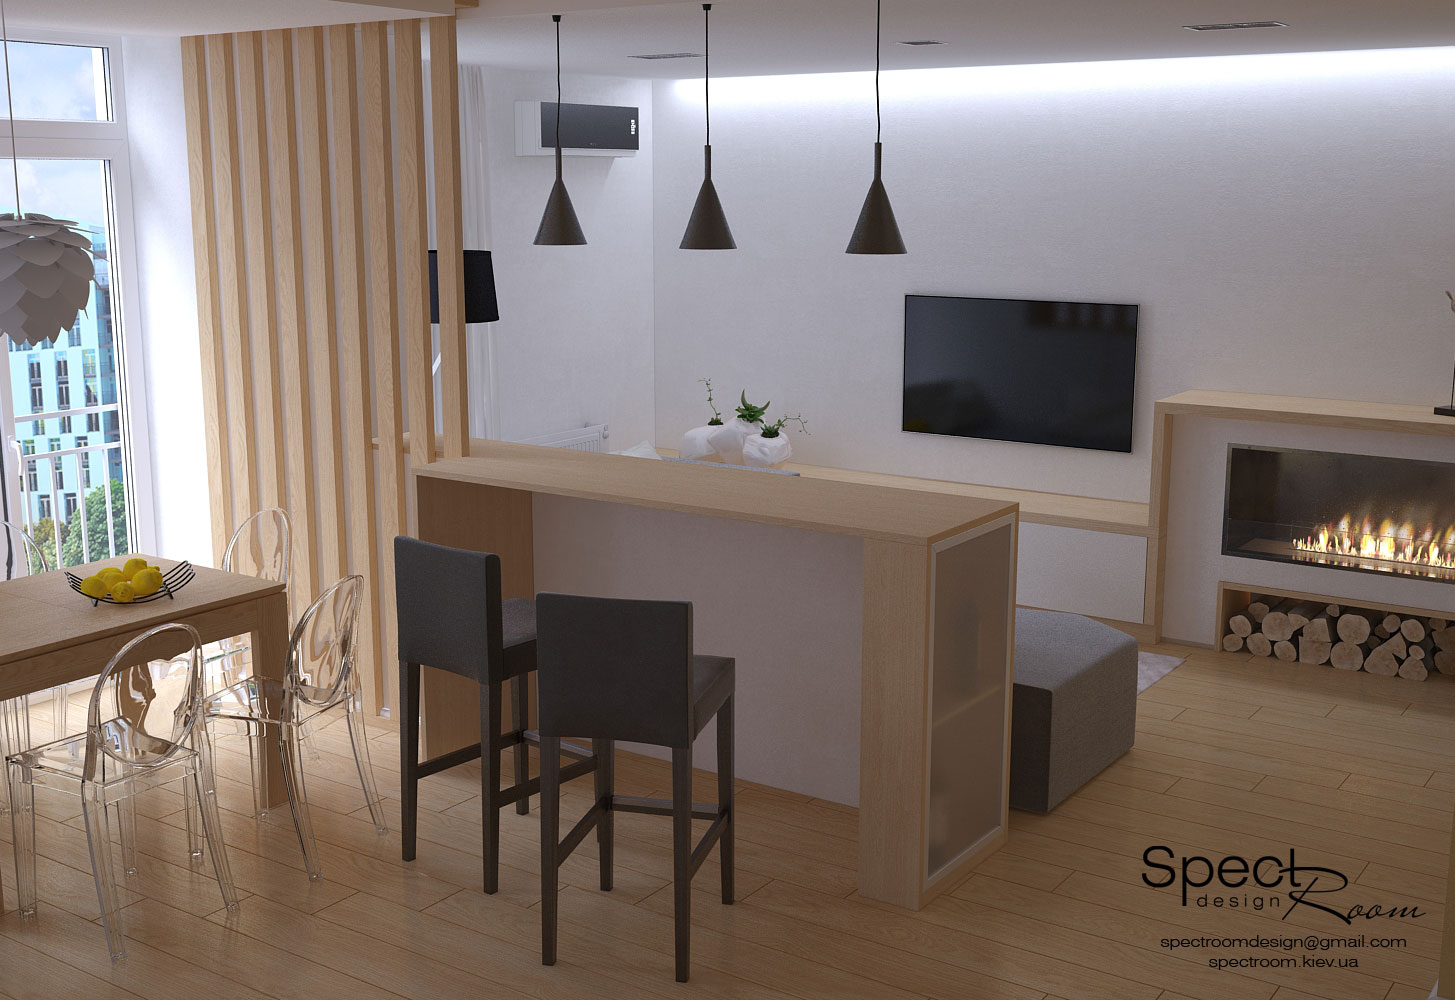 Дизайн інтер'єру квартири з мансардним поверхом  - Spectroom